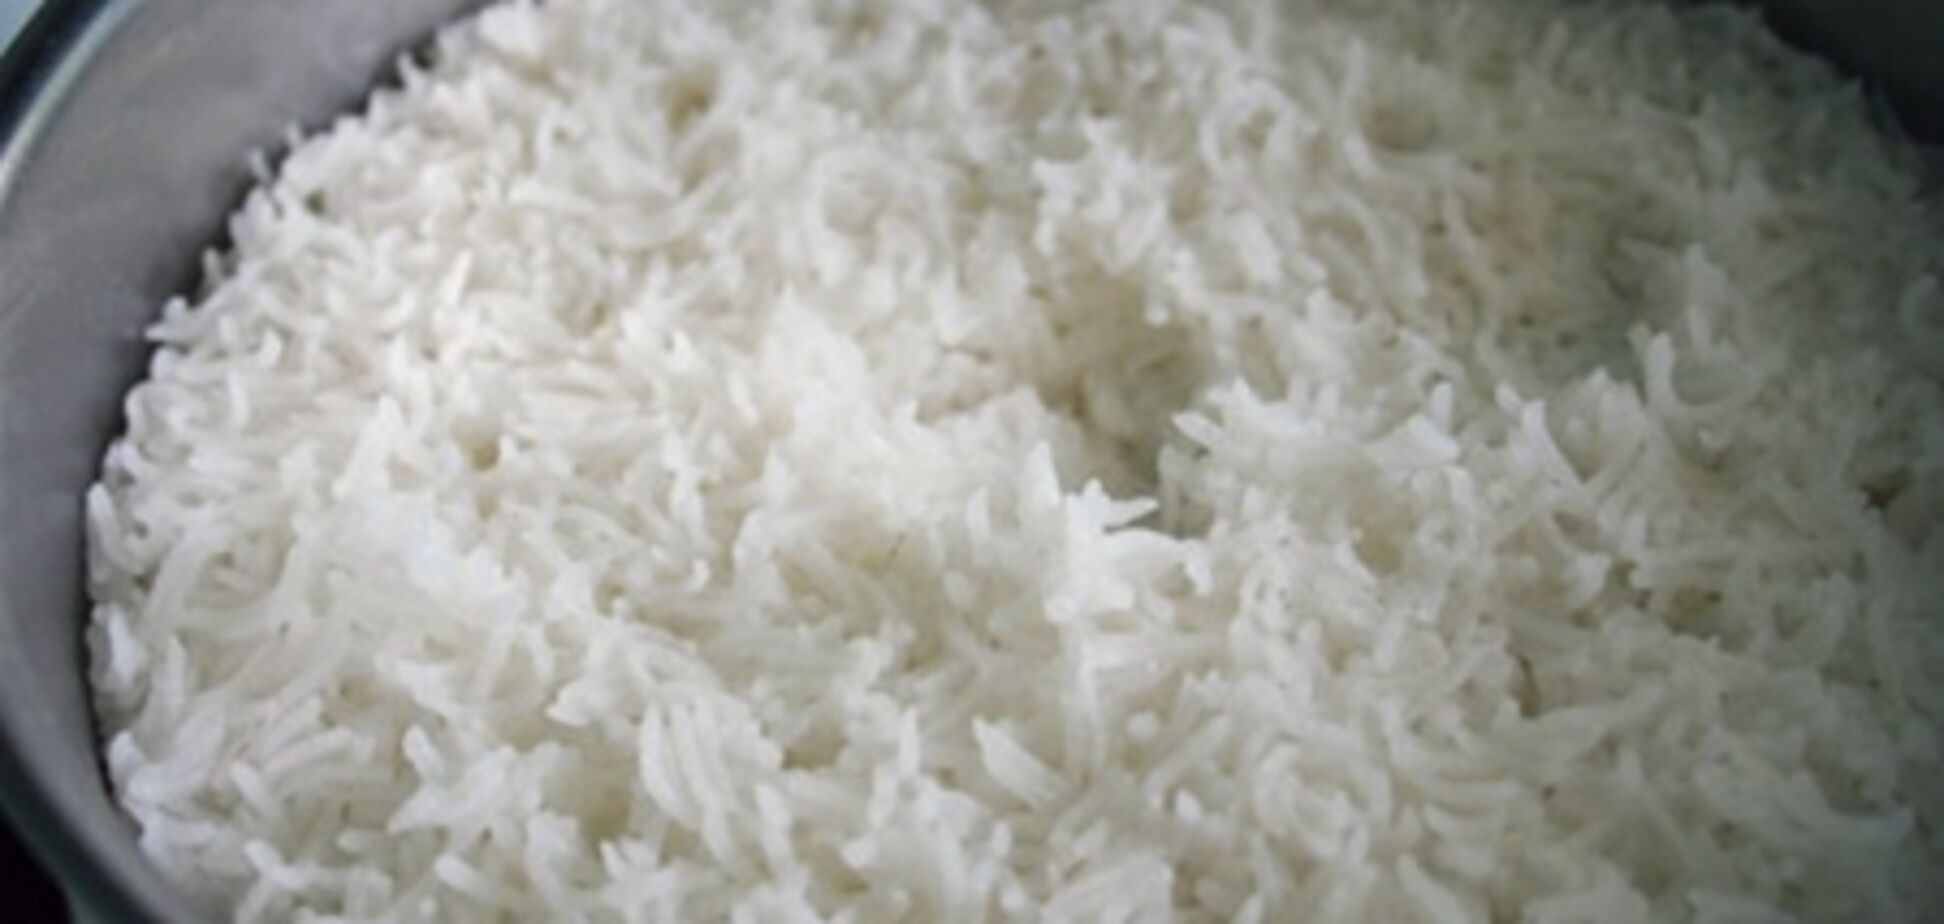 ООН: Ціни на продукти зросли за рахунок рису і цукру